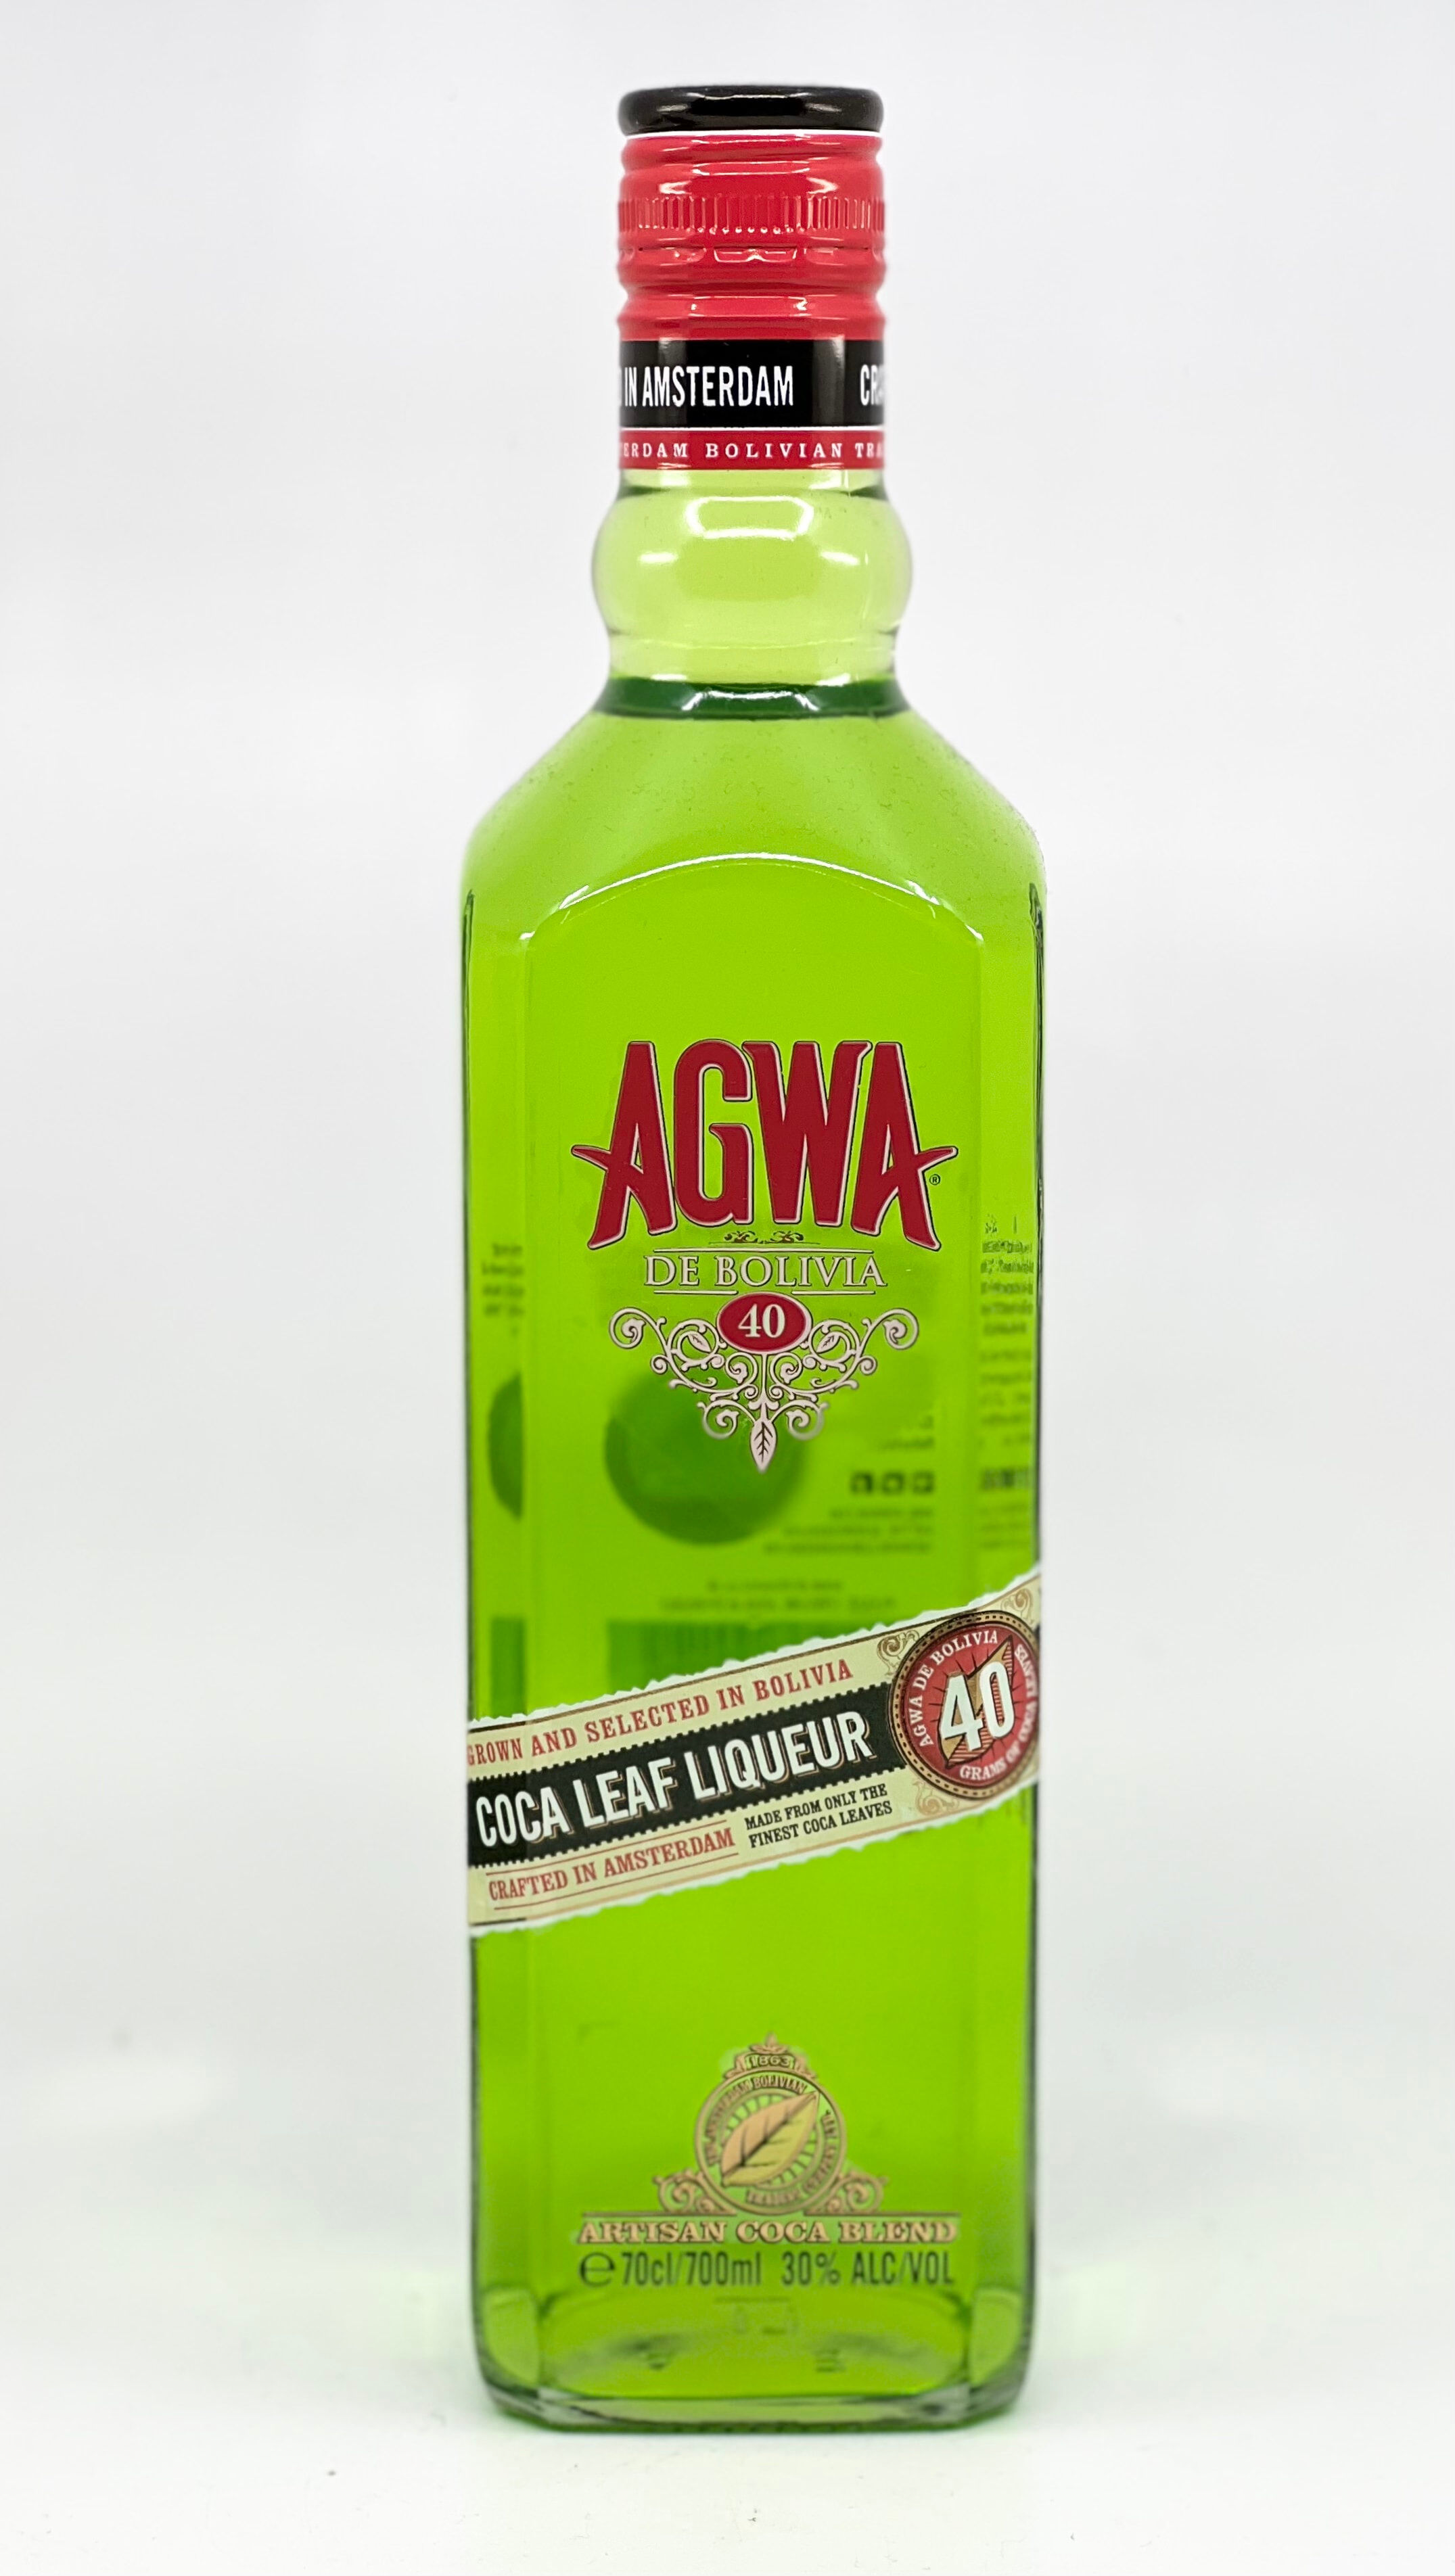 AGWA Coca Leaf Liqueur